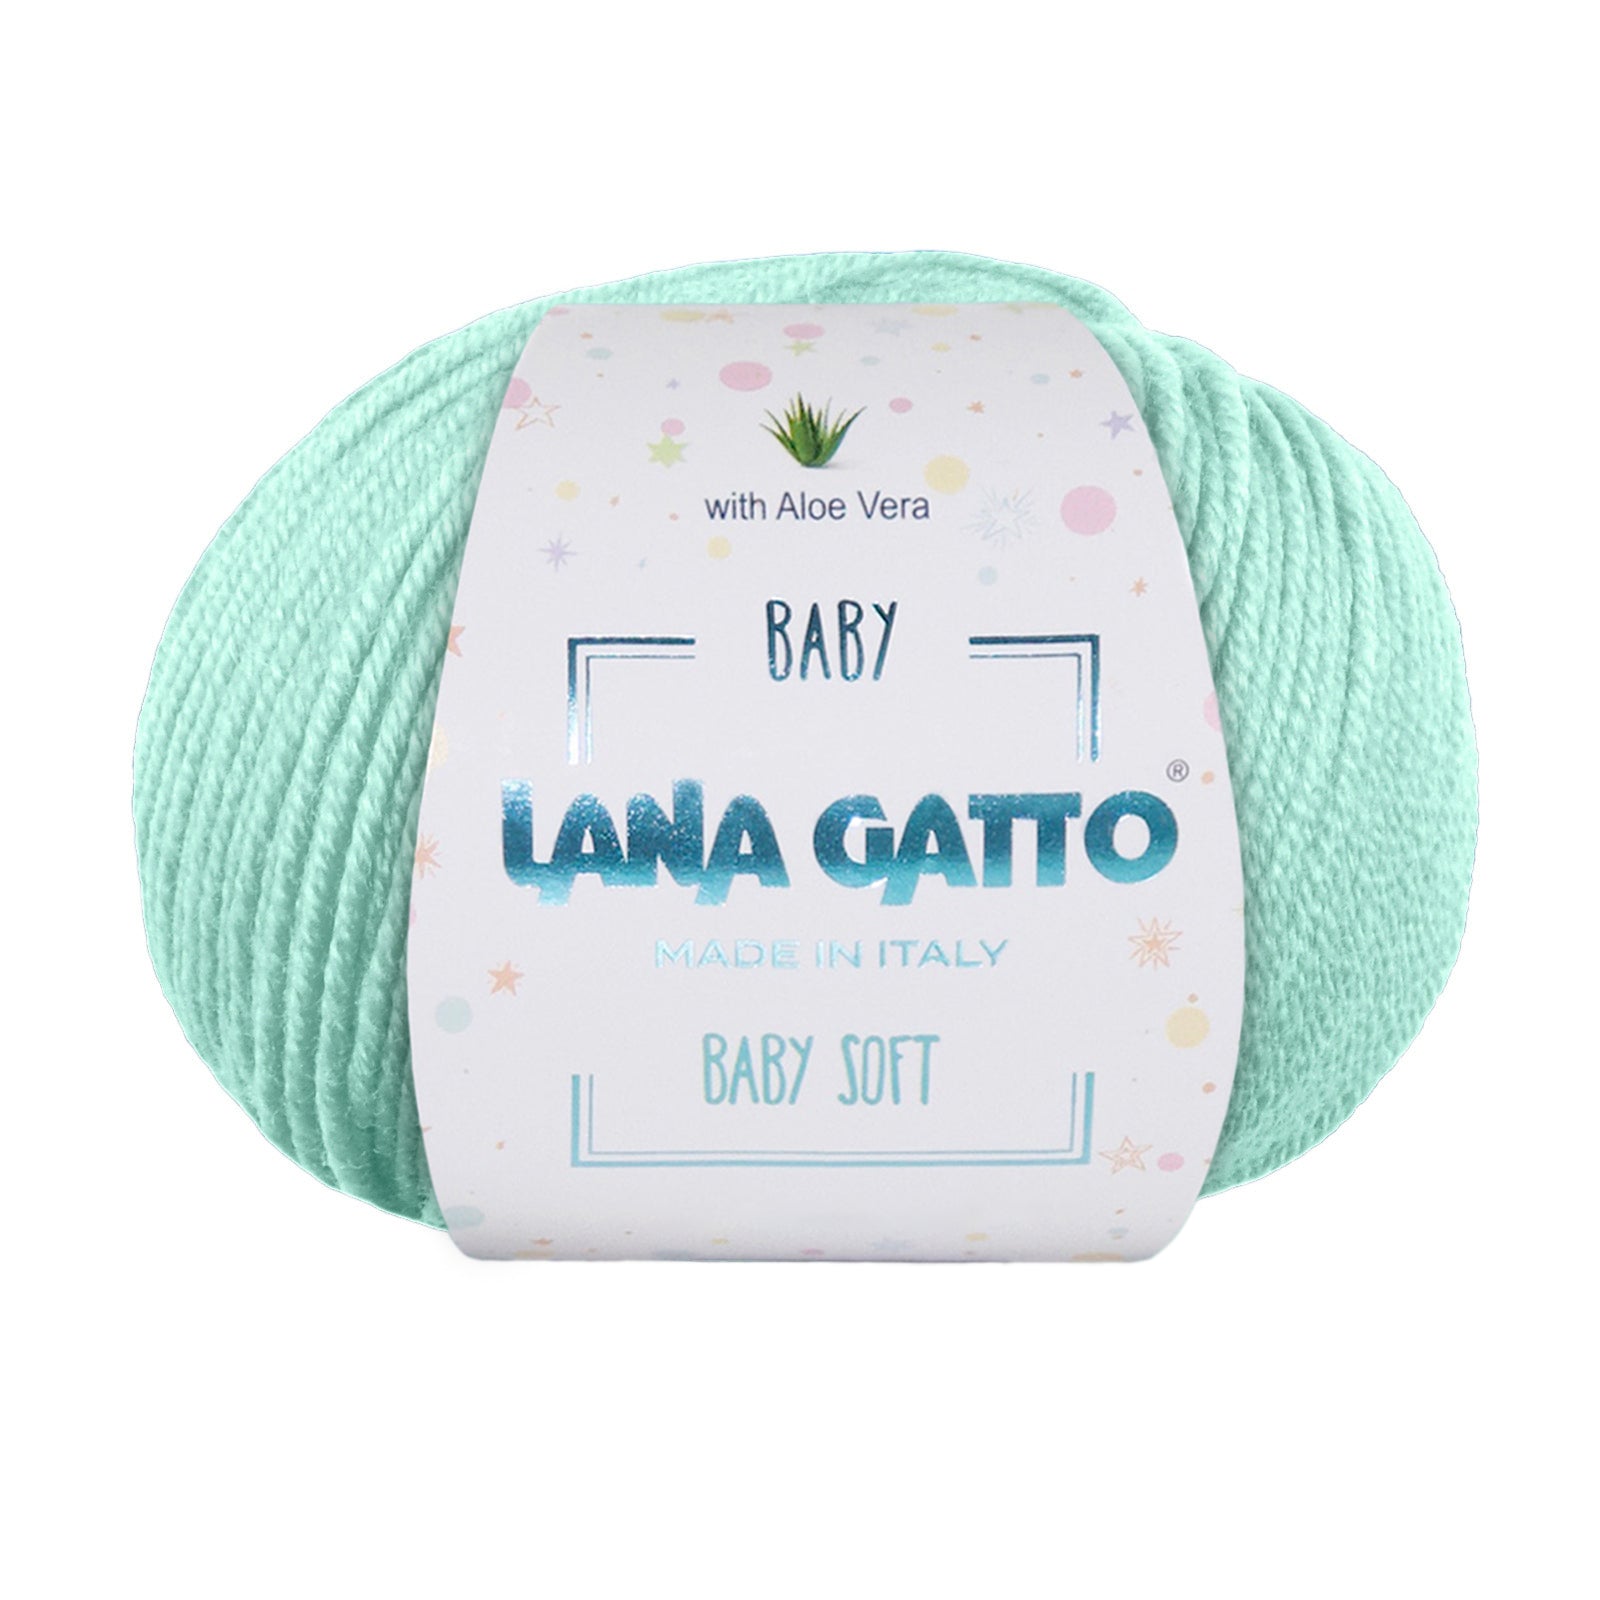 Gomitolo 100% Pura Lana Vergine Merino Extrafine, Lana Gatto Linea Baby Soft con Aloe Vera - Tonalità Verde e Azzurro